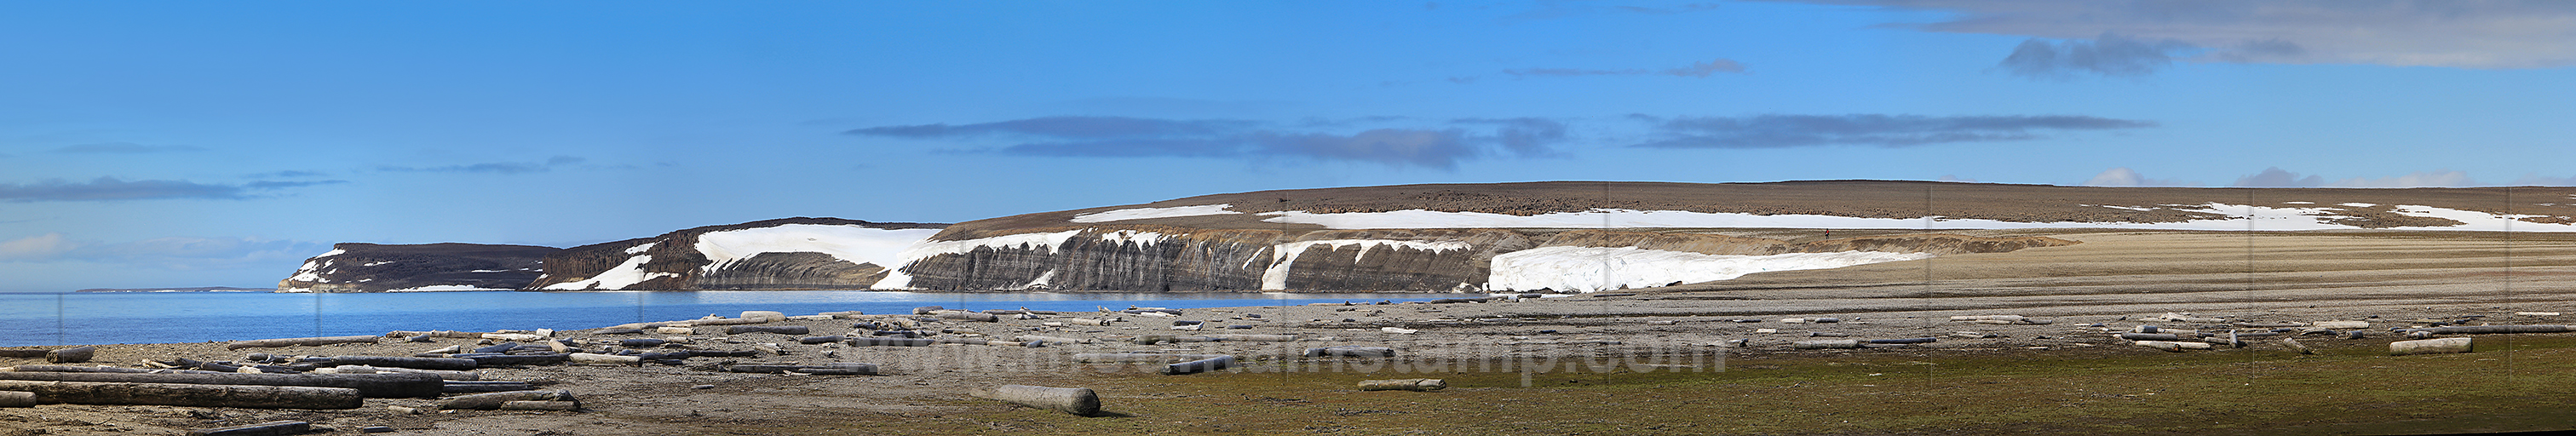 Spitsbergen panorama Hinlopen Strait